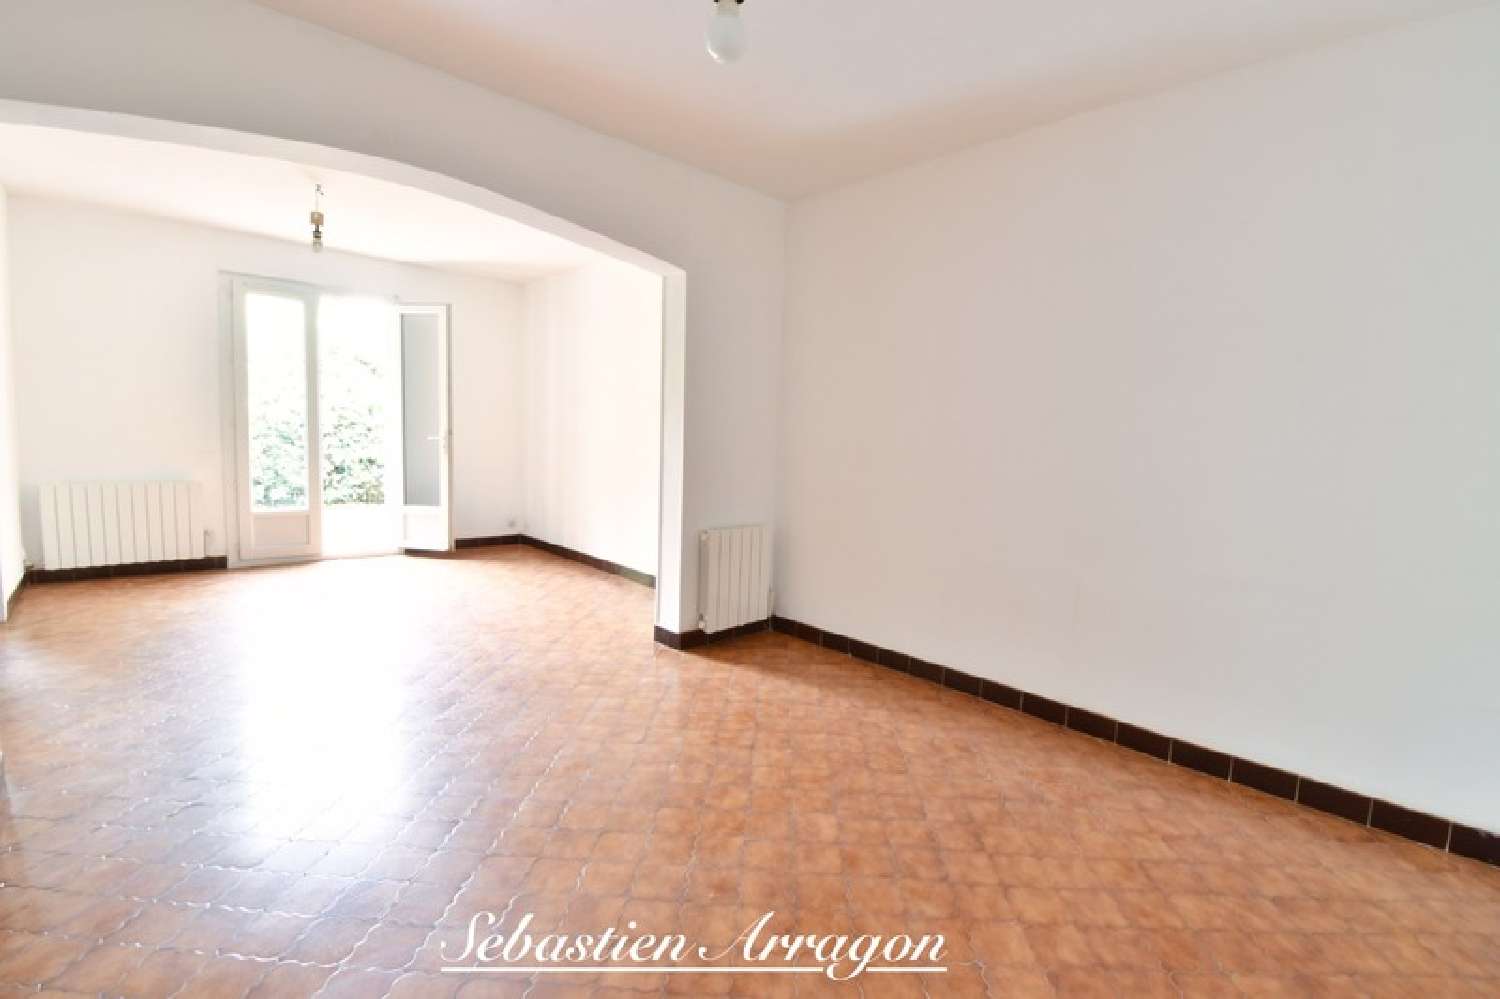  à vendre appartement Villeneuve-sur-Lot Lot-et-Garonne 3